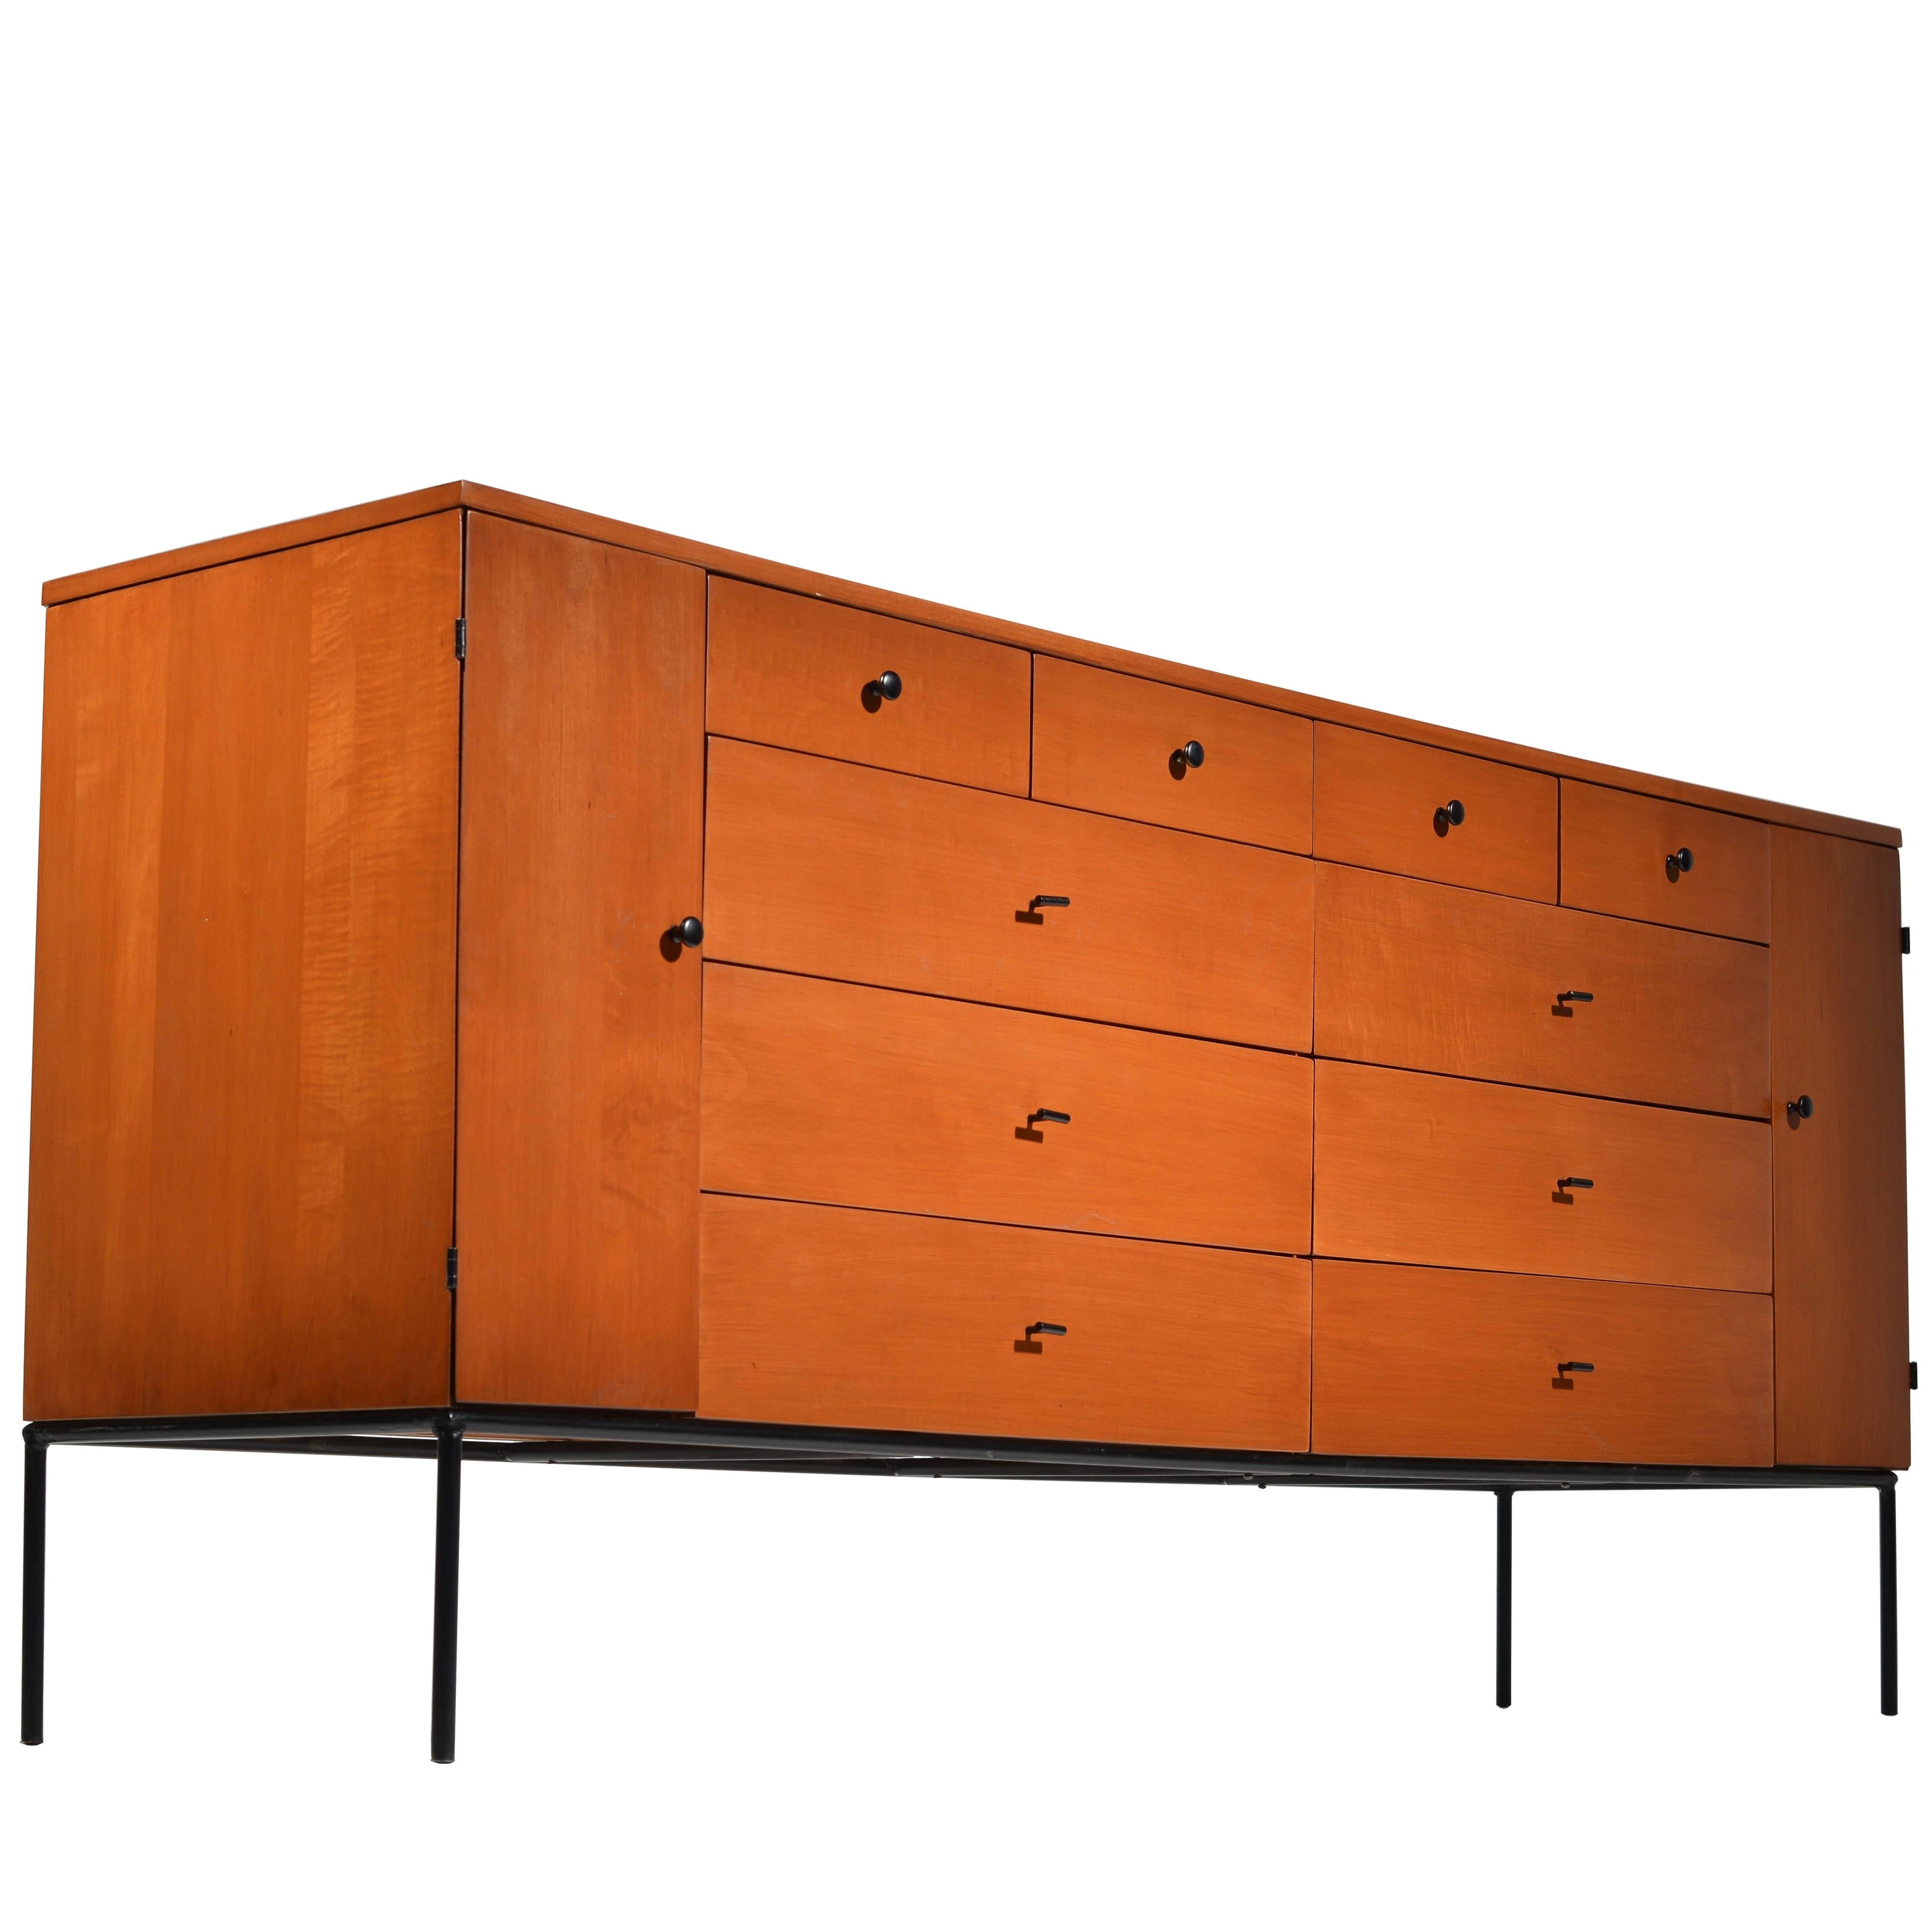 Rare 20 Drawer Dresser by Paul McCobb for Planner Group